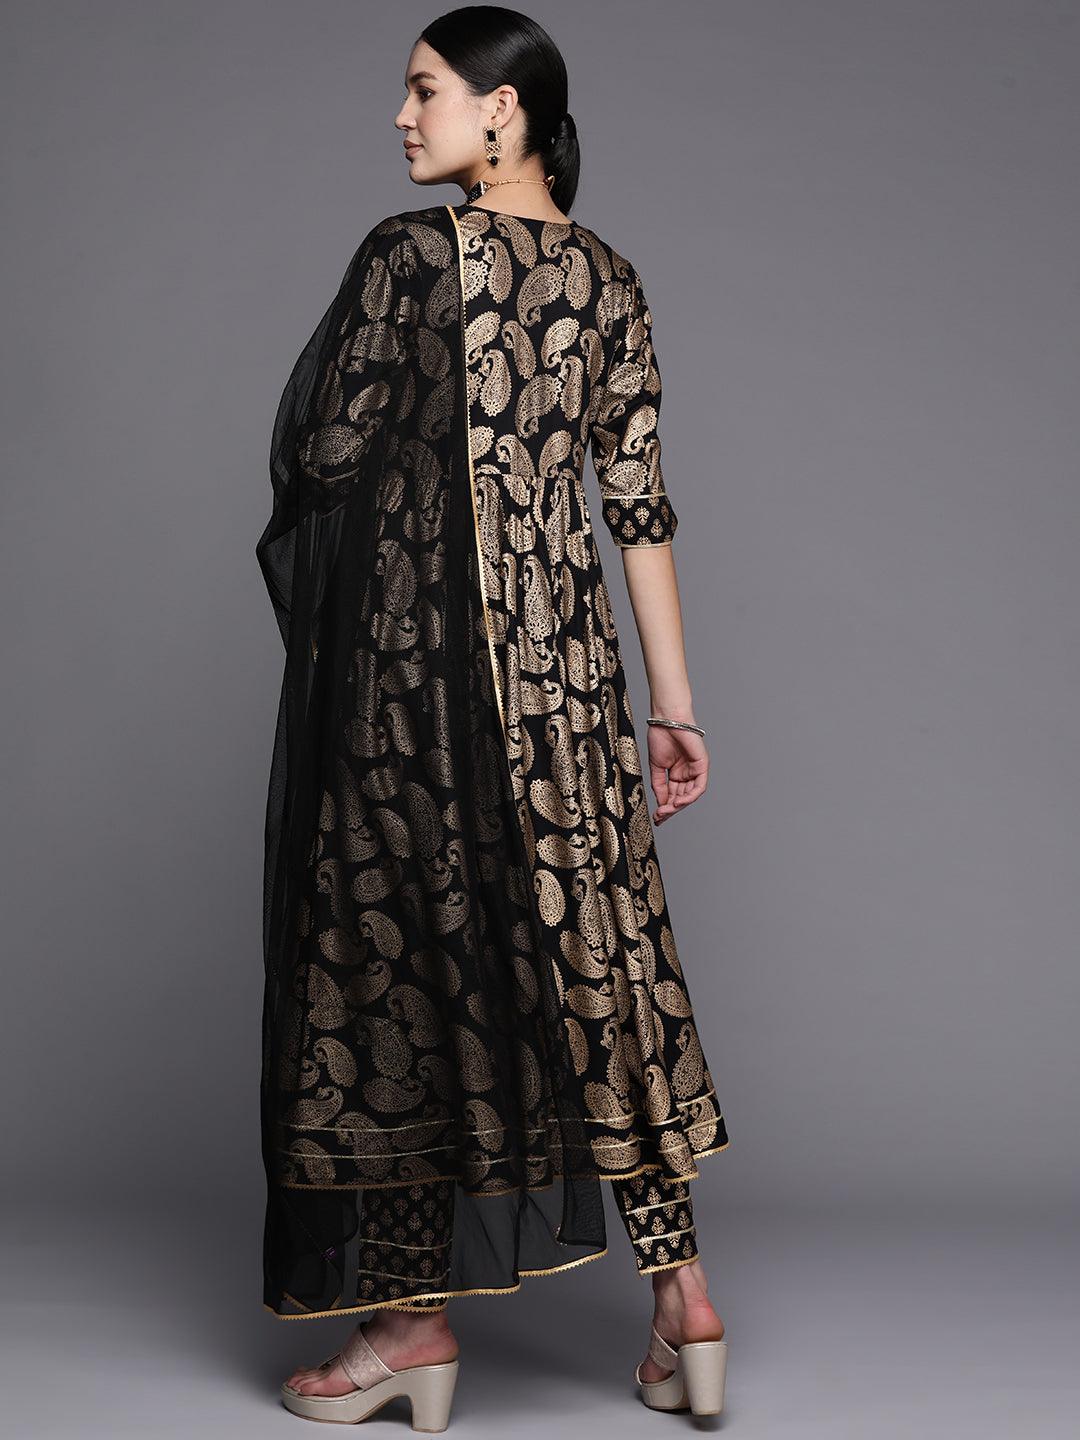 Black Colored Georgette Anarkali Suit With Dupatta - Anarkali Dresses - Salwar  Suits - Indian